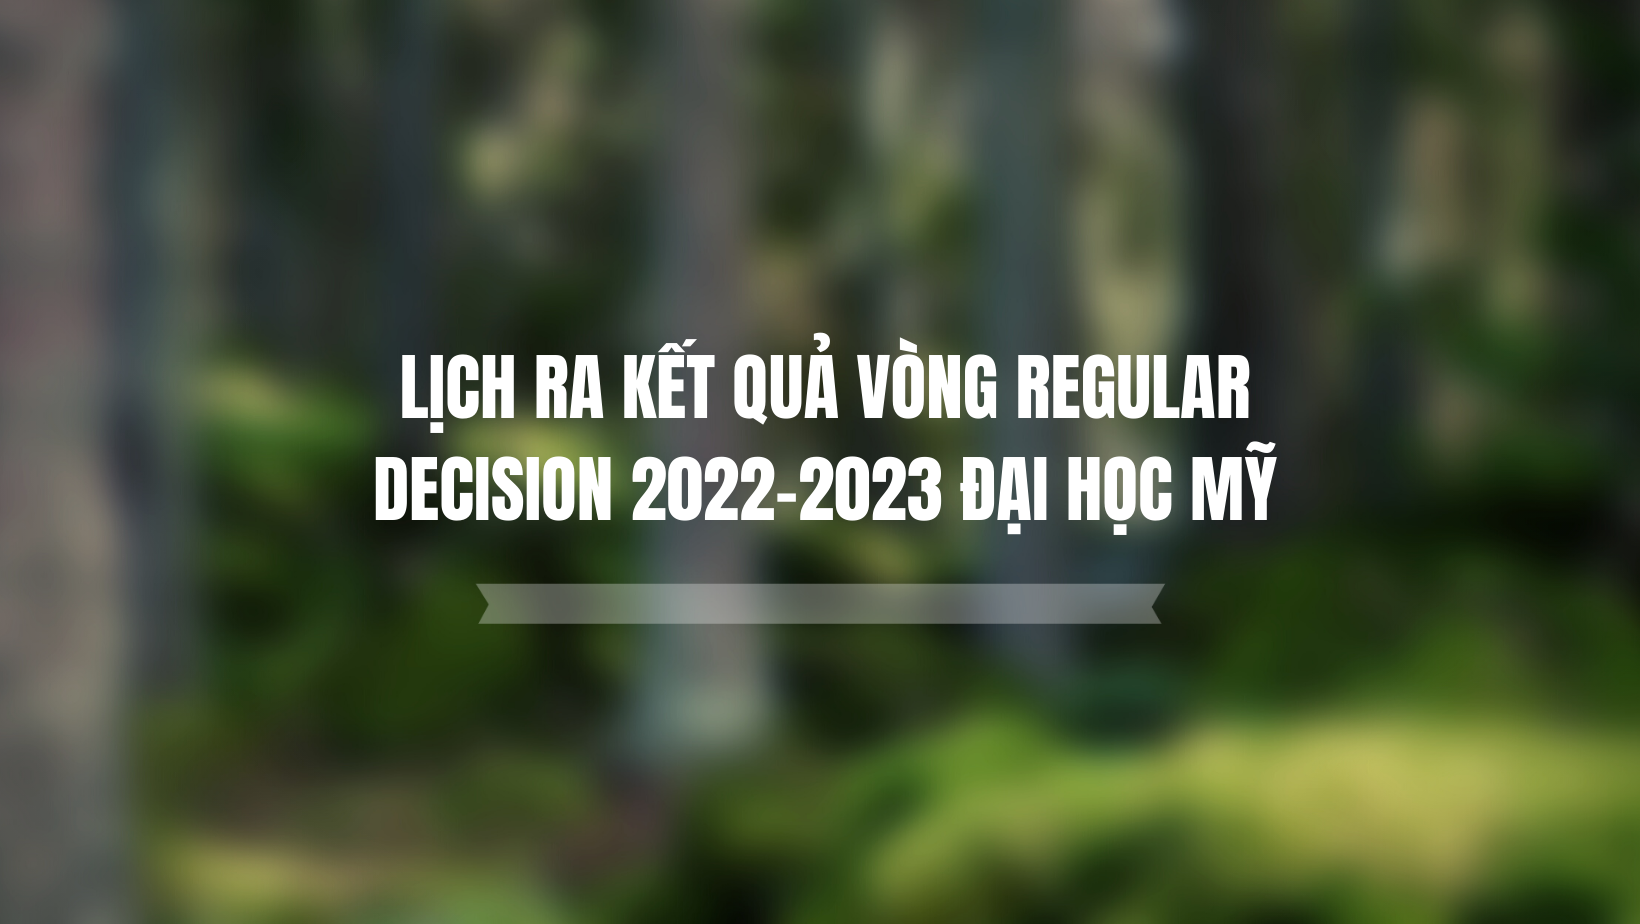 LỊCH RA KẾT QUẢ VÒNG REGULAR DECISION 2022-2023 ĐẠI HỌC MỸ